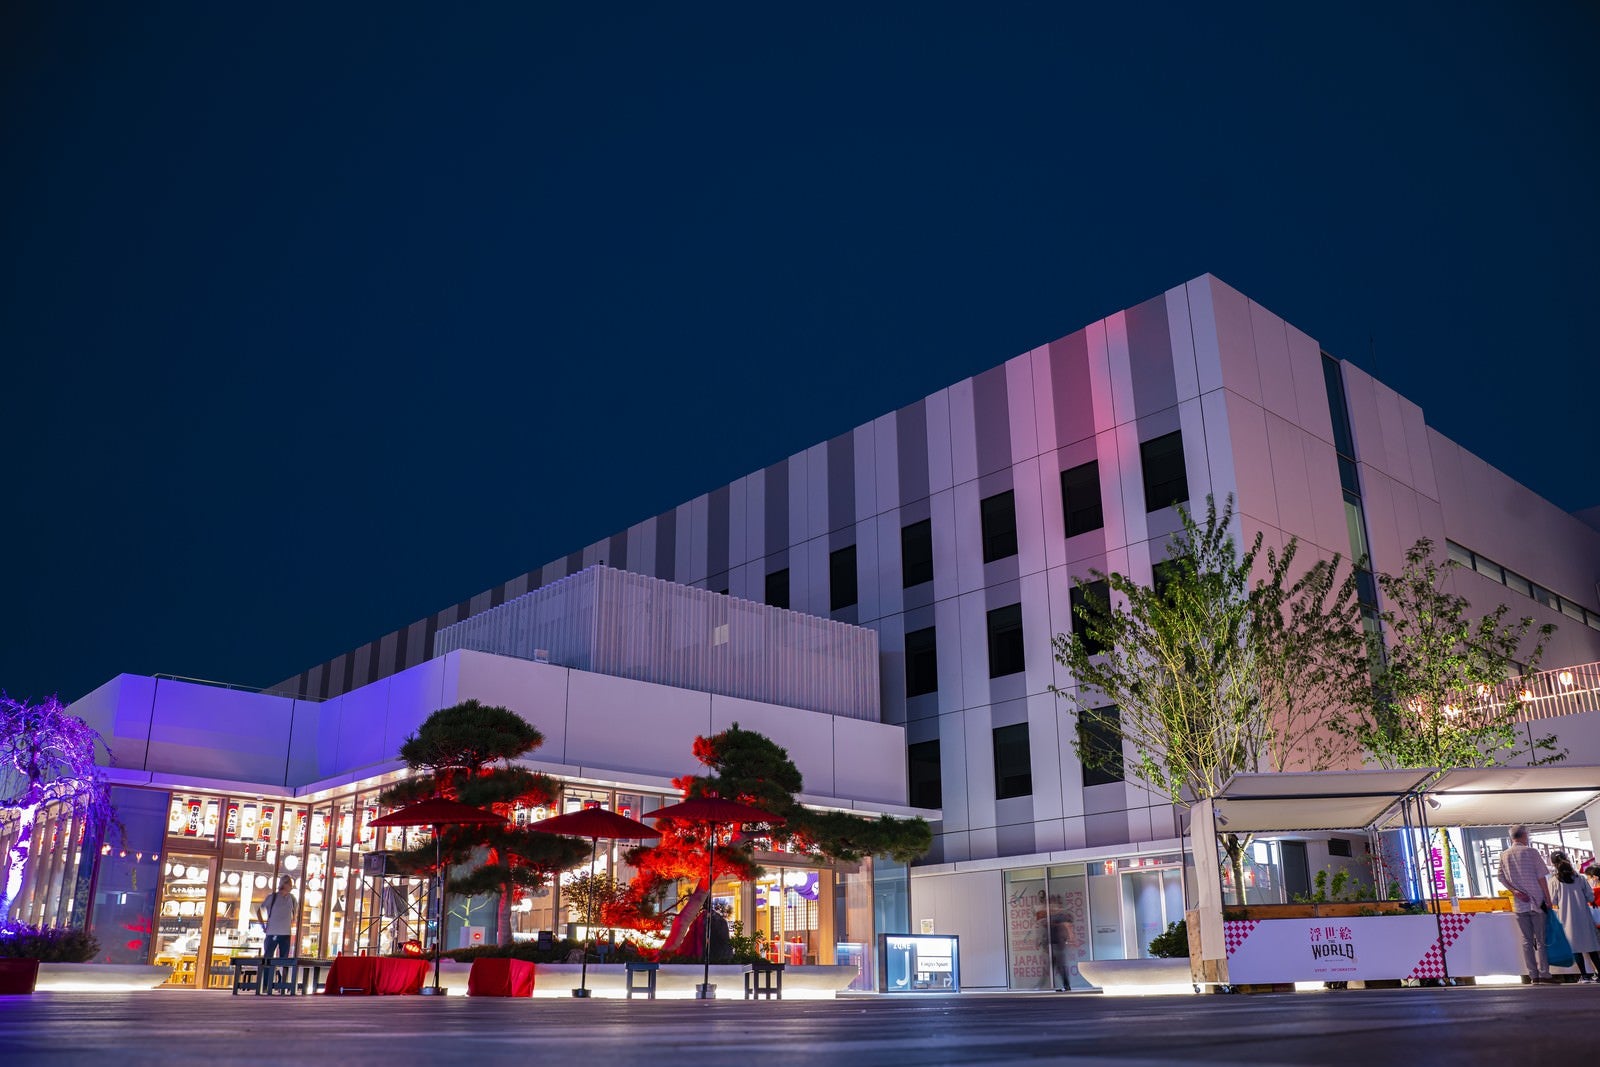 「夜の大規模総合施設の外観（羽田イノベーションシティ）」の写真